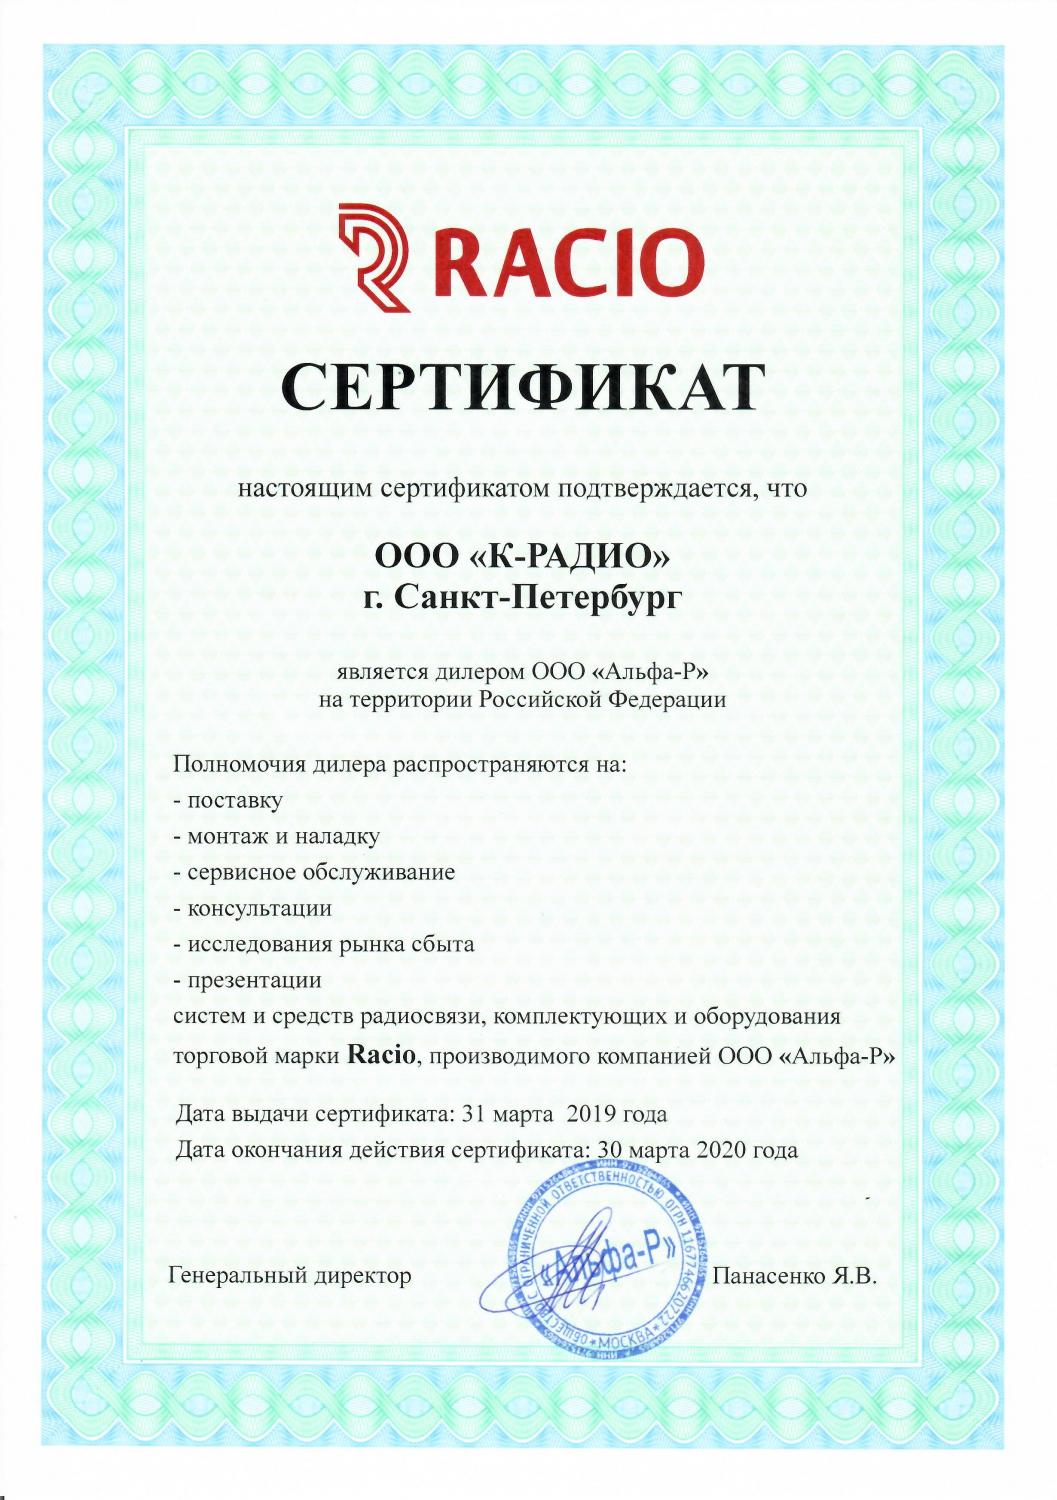 Сертификат Альфа-Р (Racio)